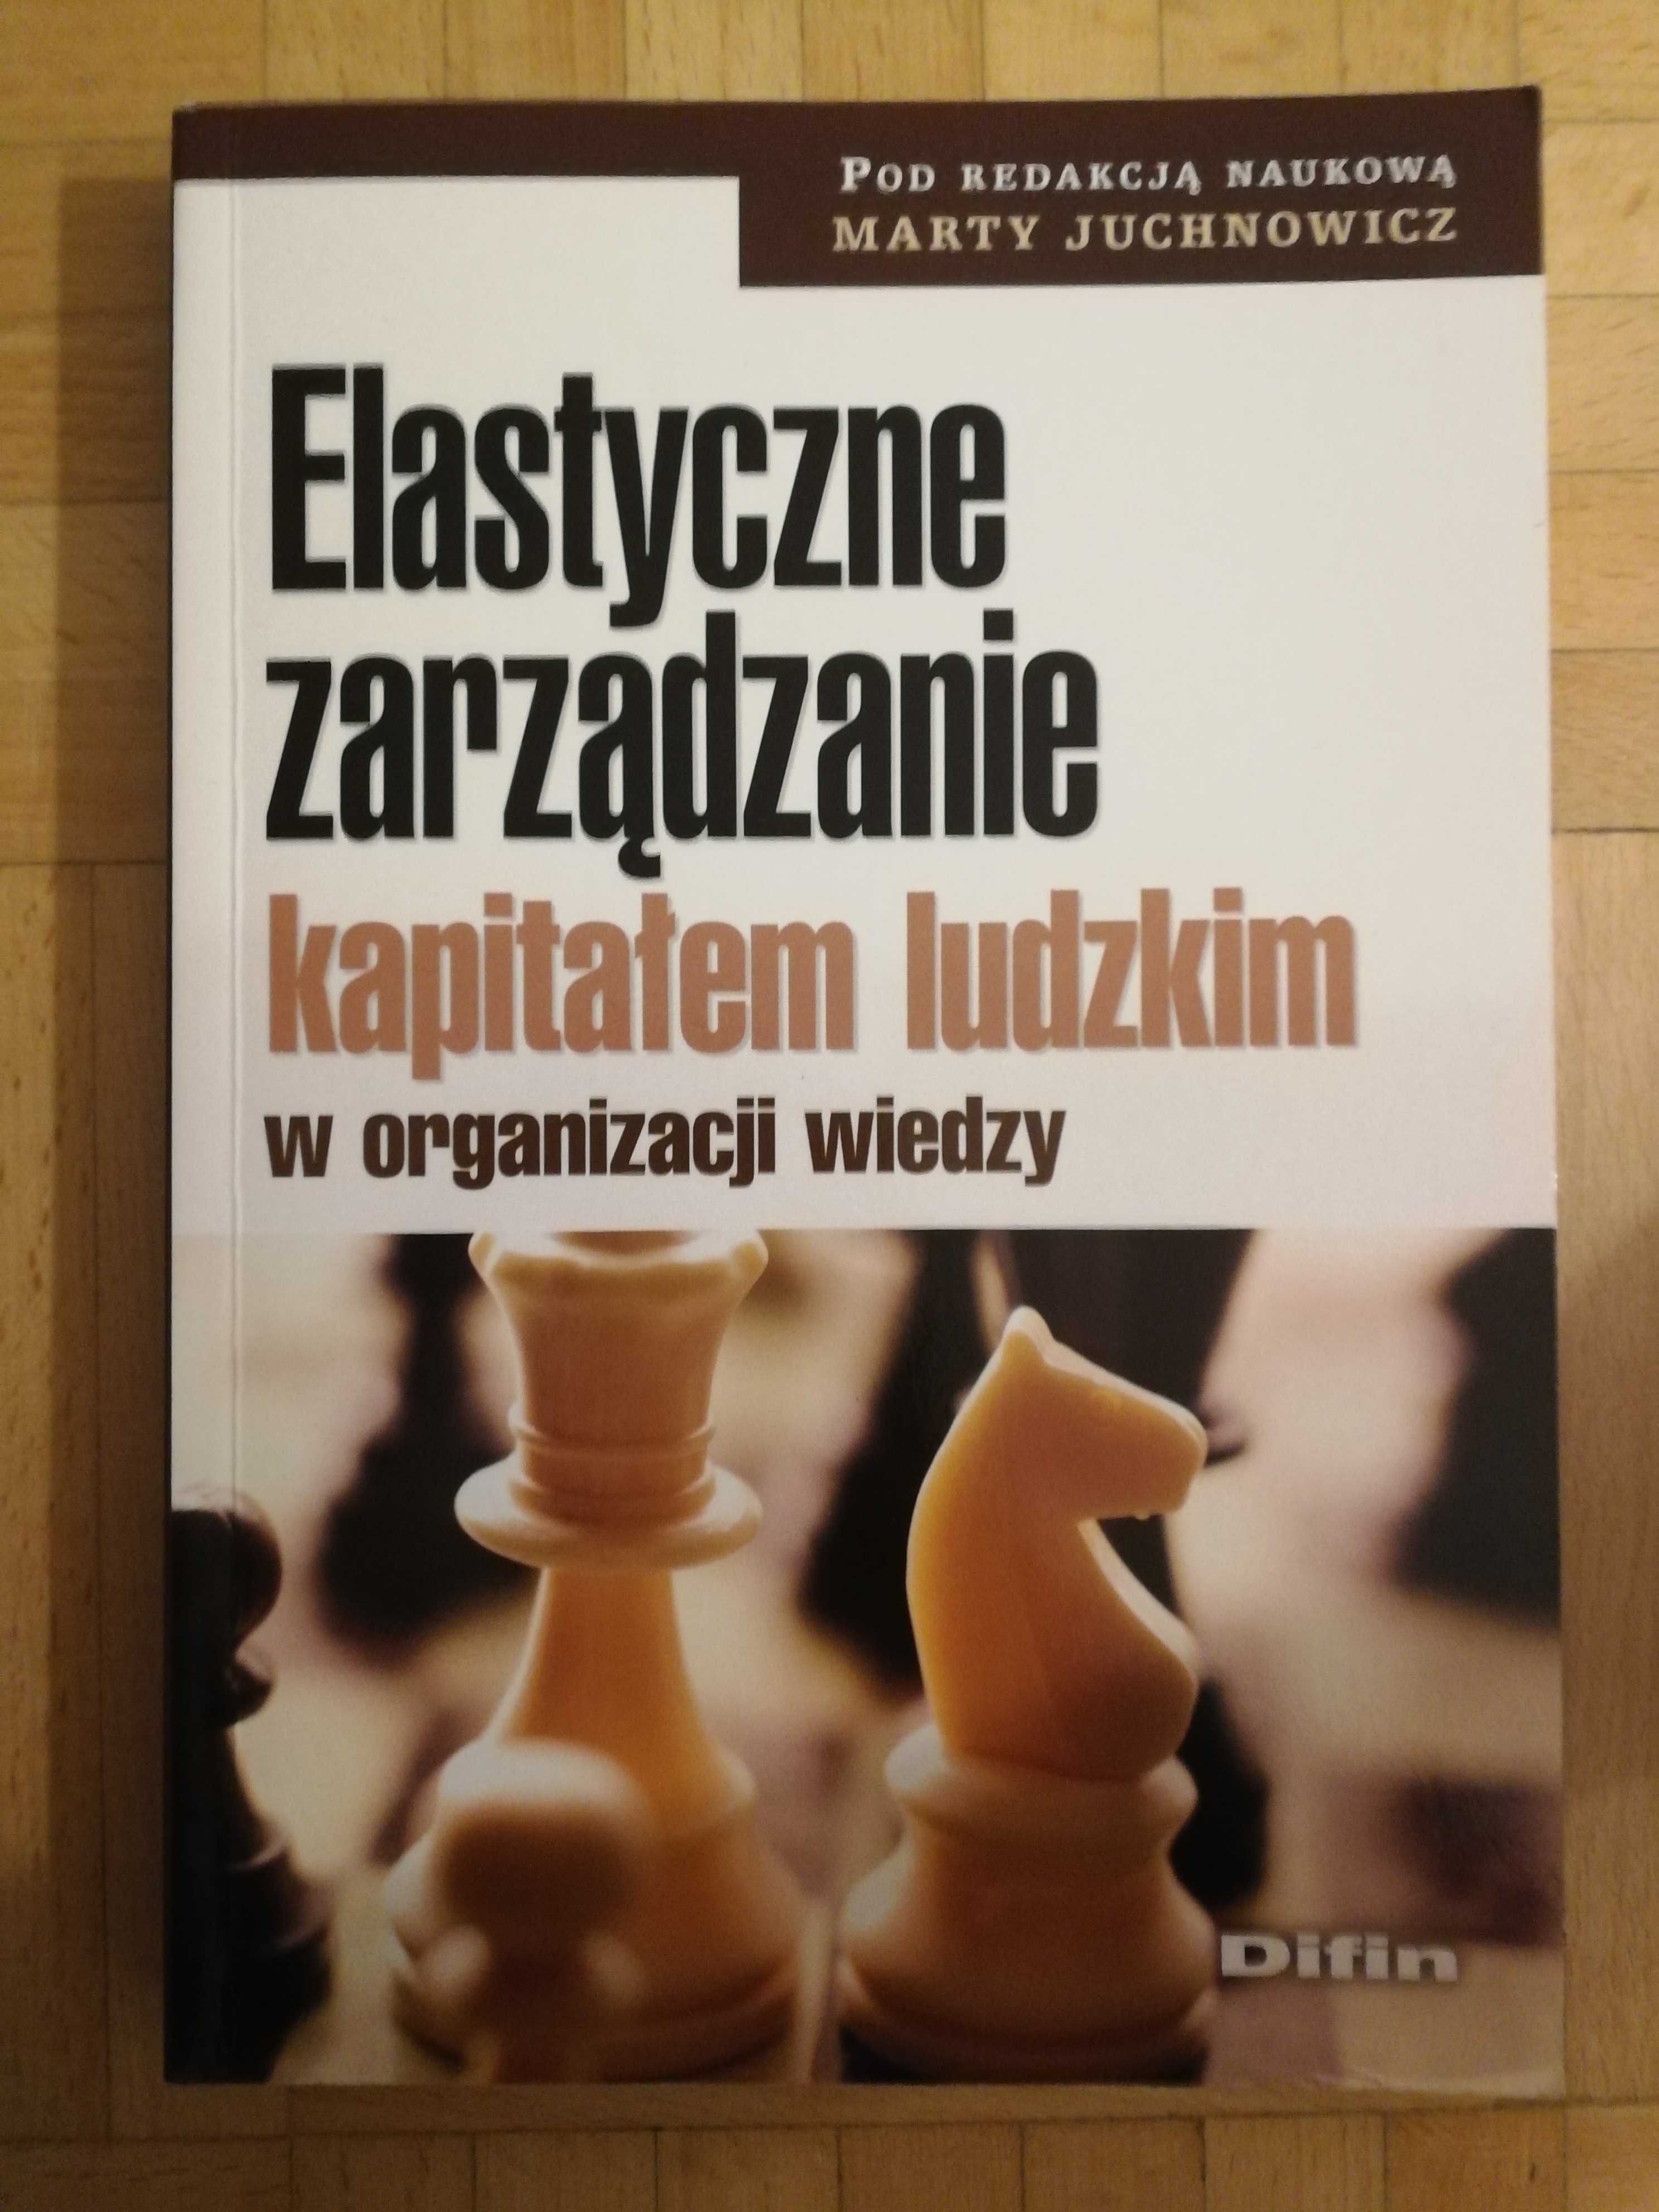 Książka "Elastyczne zarządzanie kapitałem ludzkim w org. wiedzy"